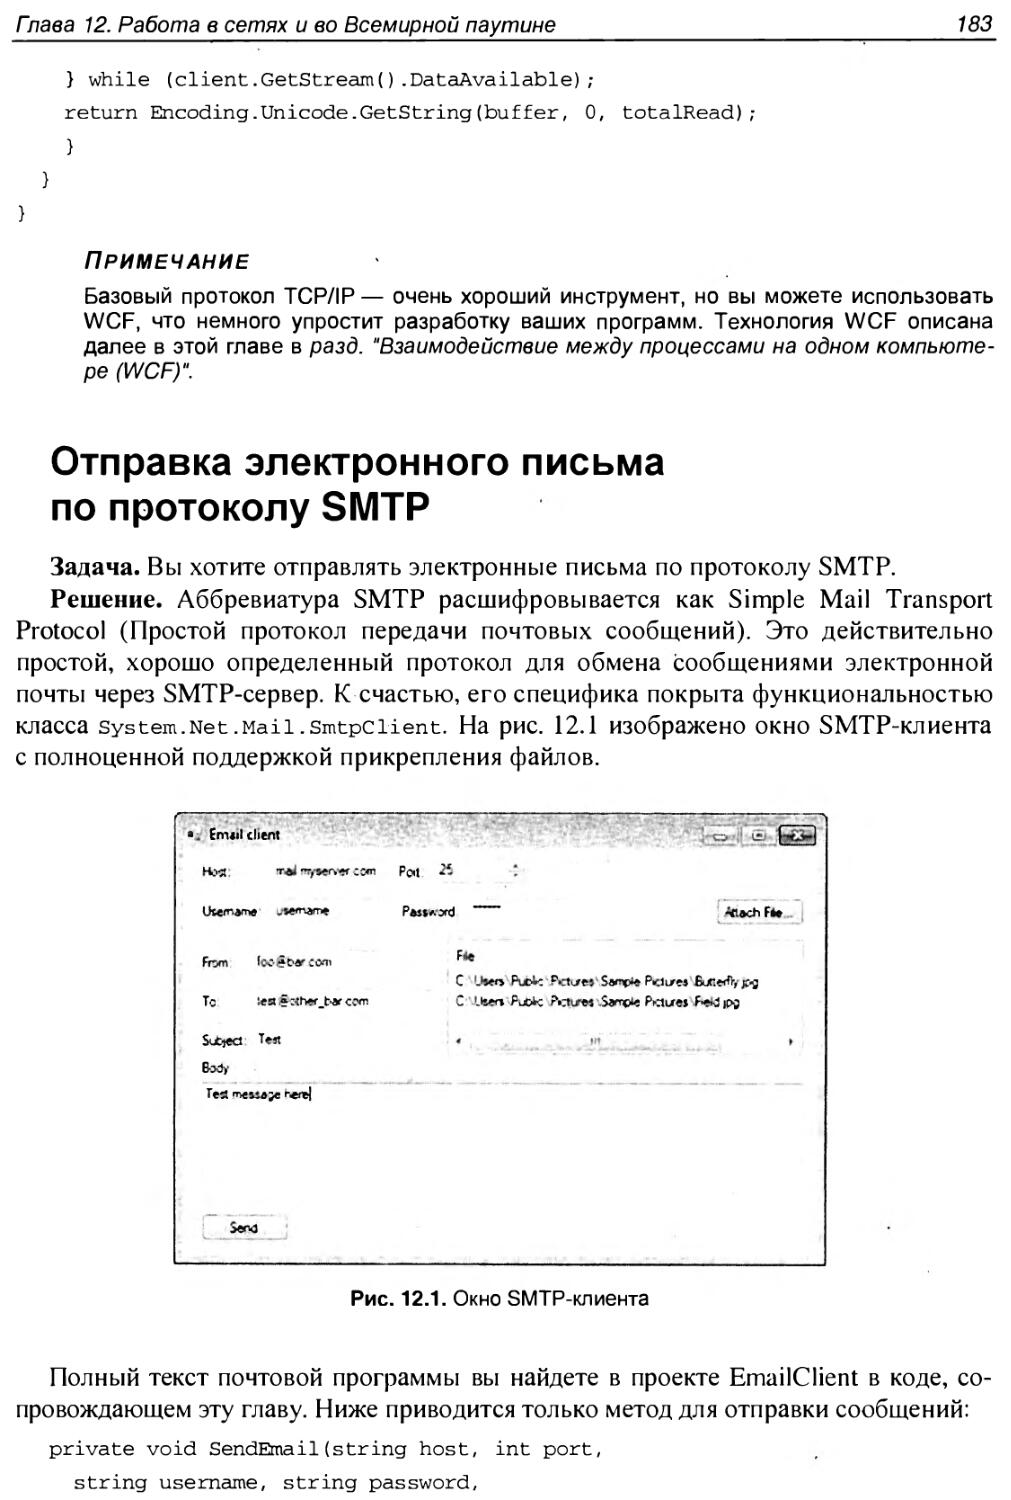 Отправка электронного письма по протоколу SMTP